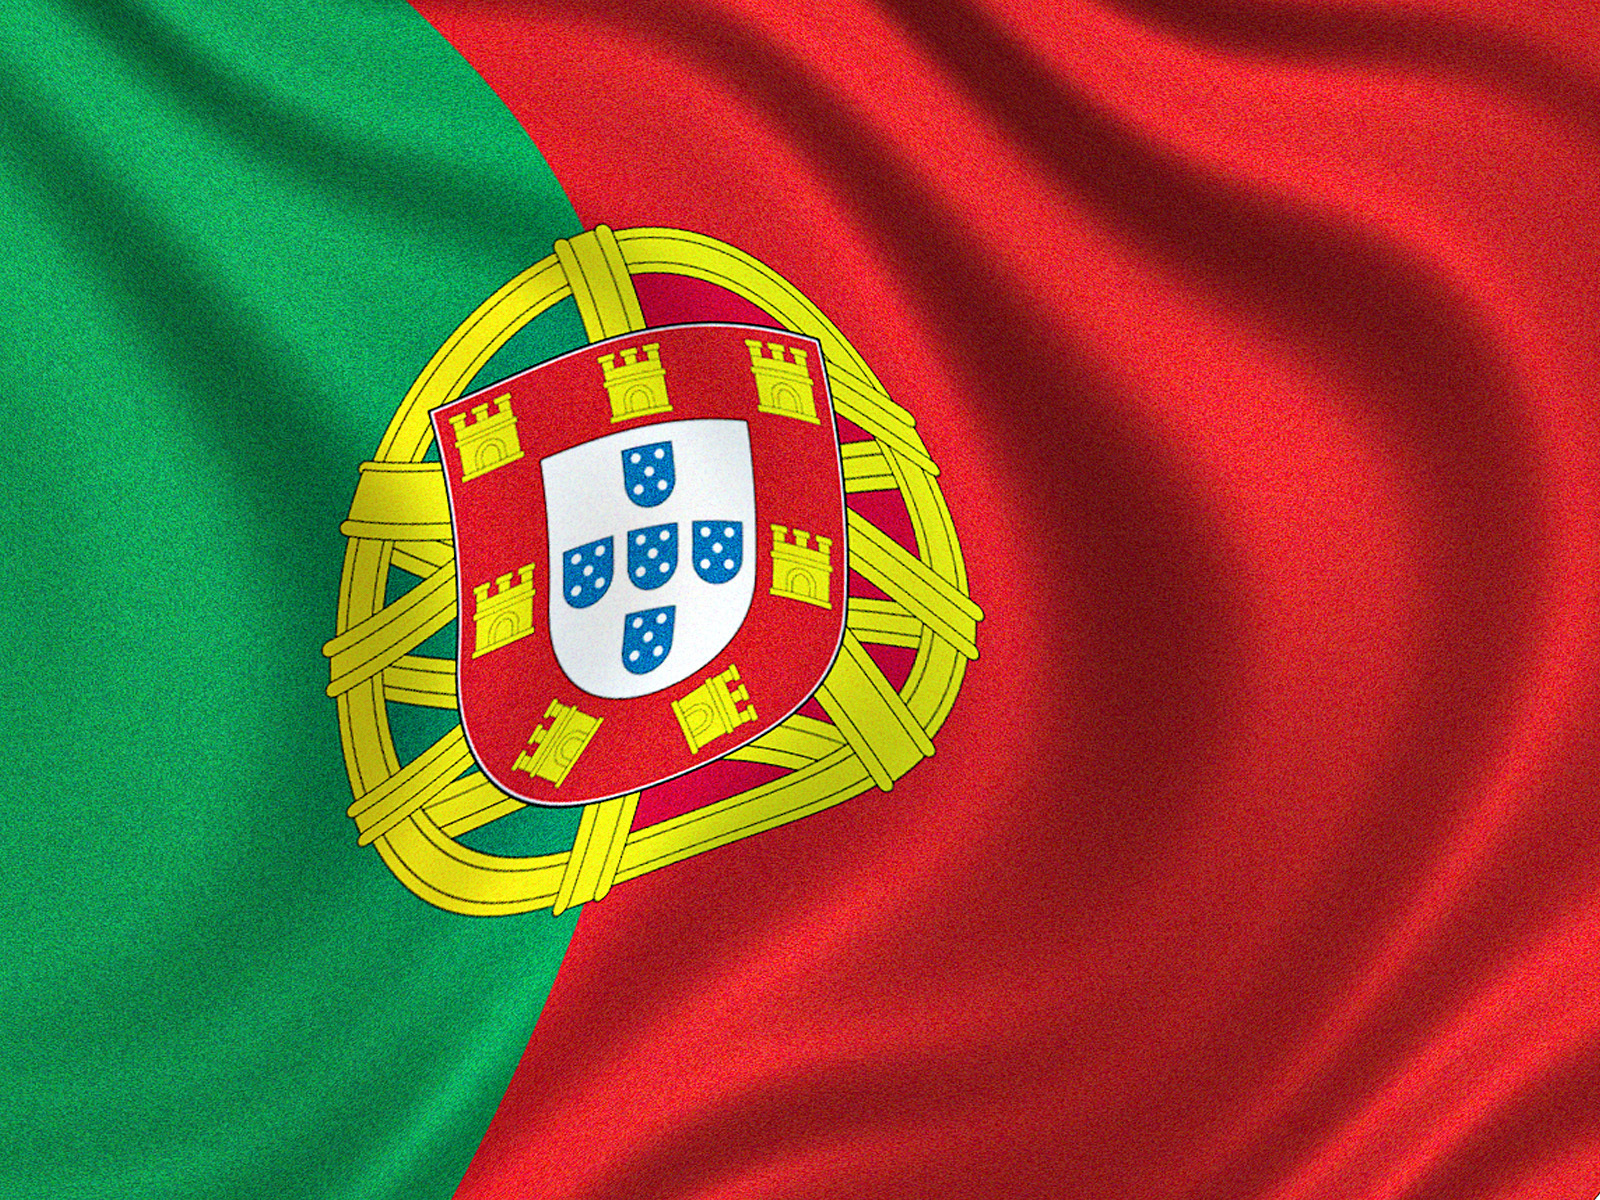 Το ιρλανδικό παράδειγμα ετοιμάζεται να ακολουθήσει η Πορτογαλία